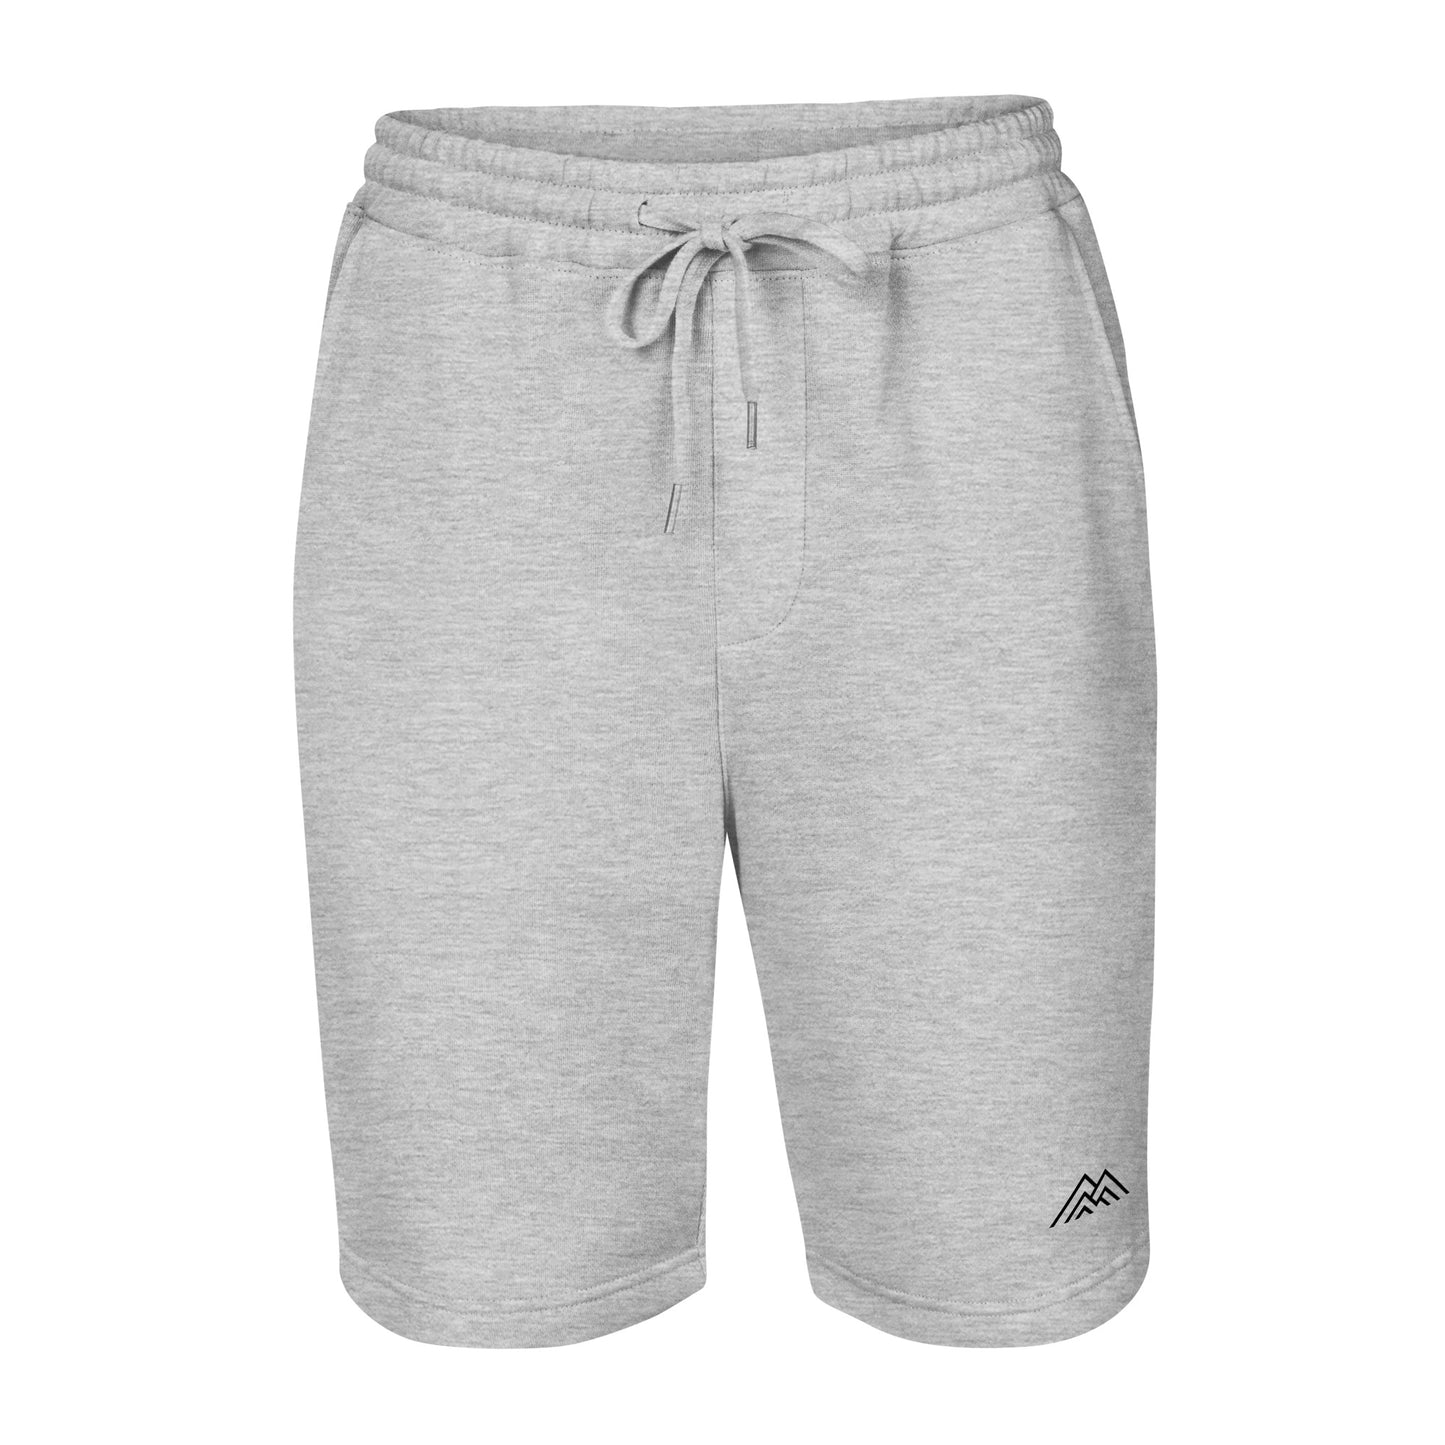 Men's fleece shorts (grey and white)